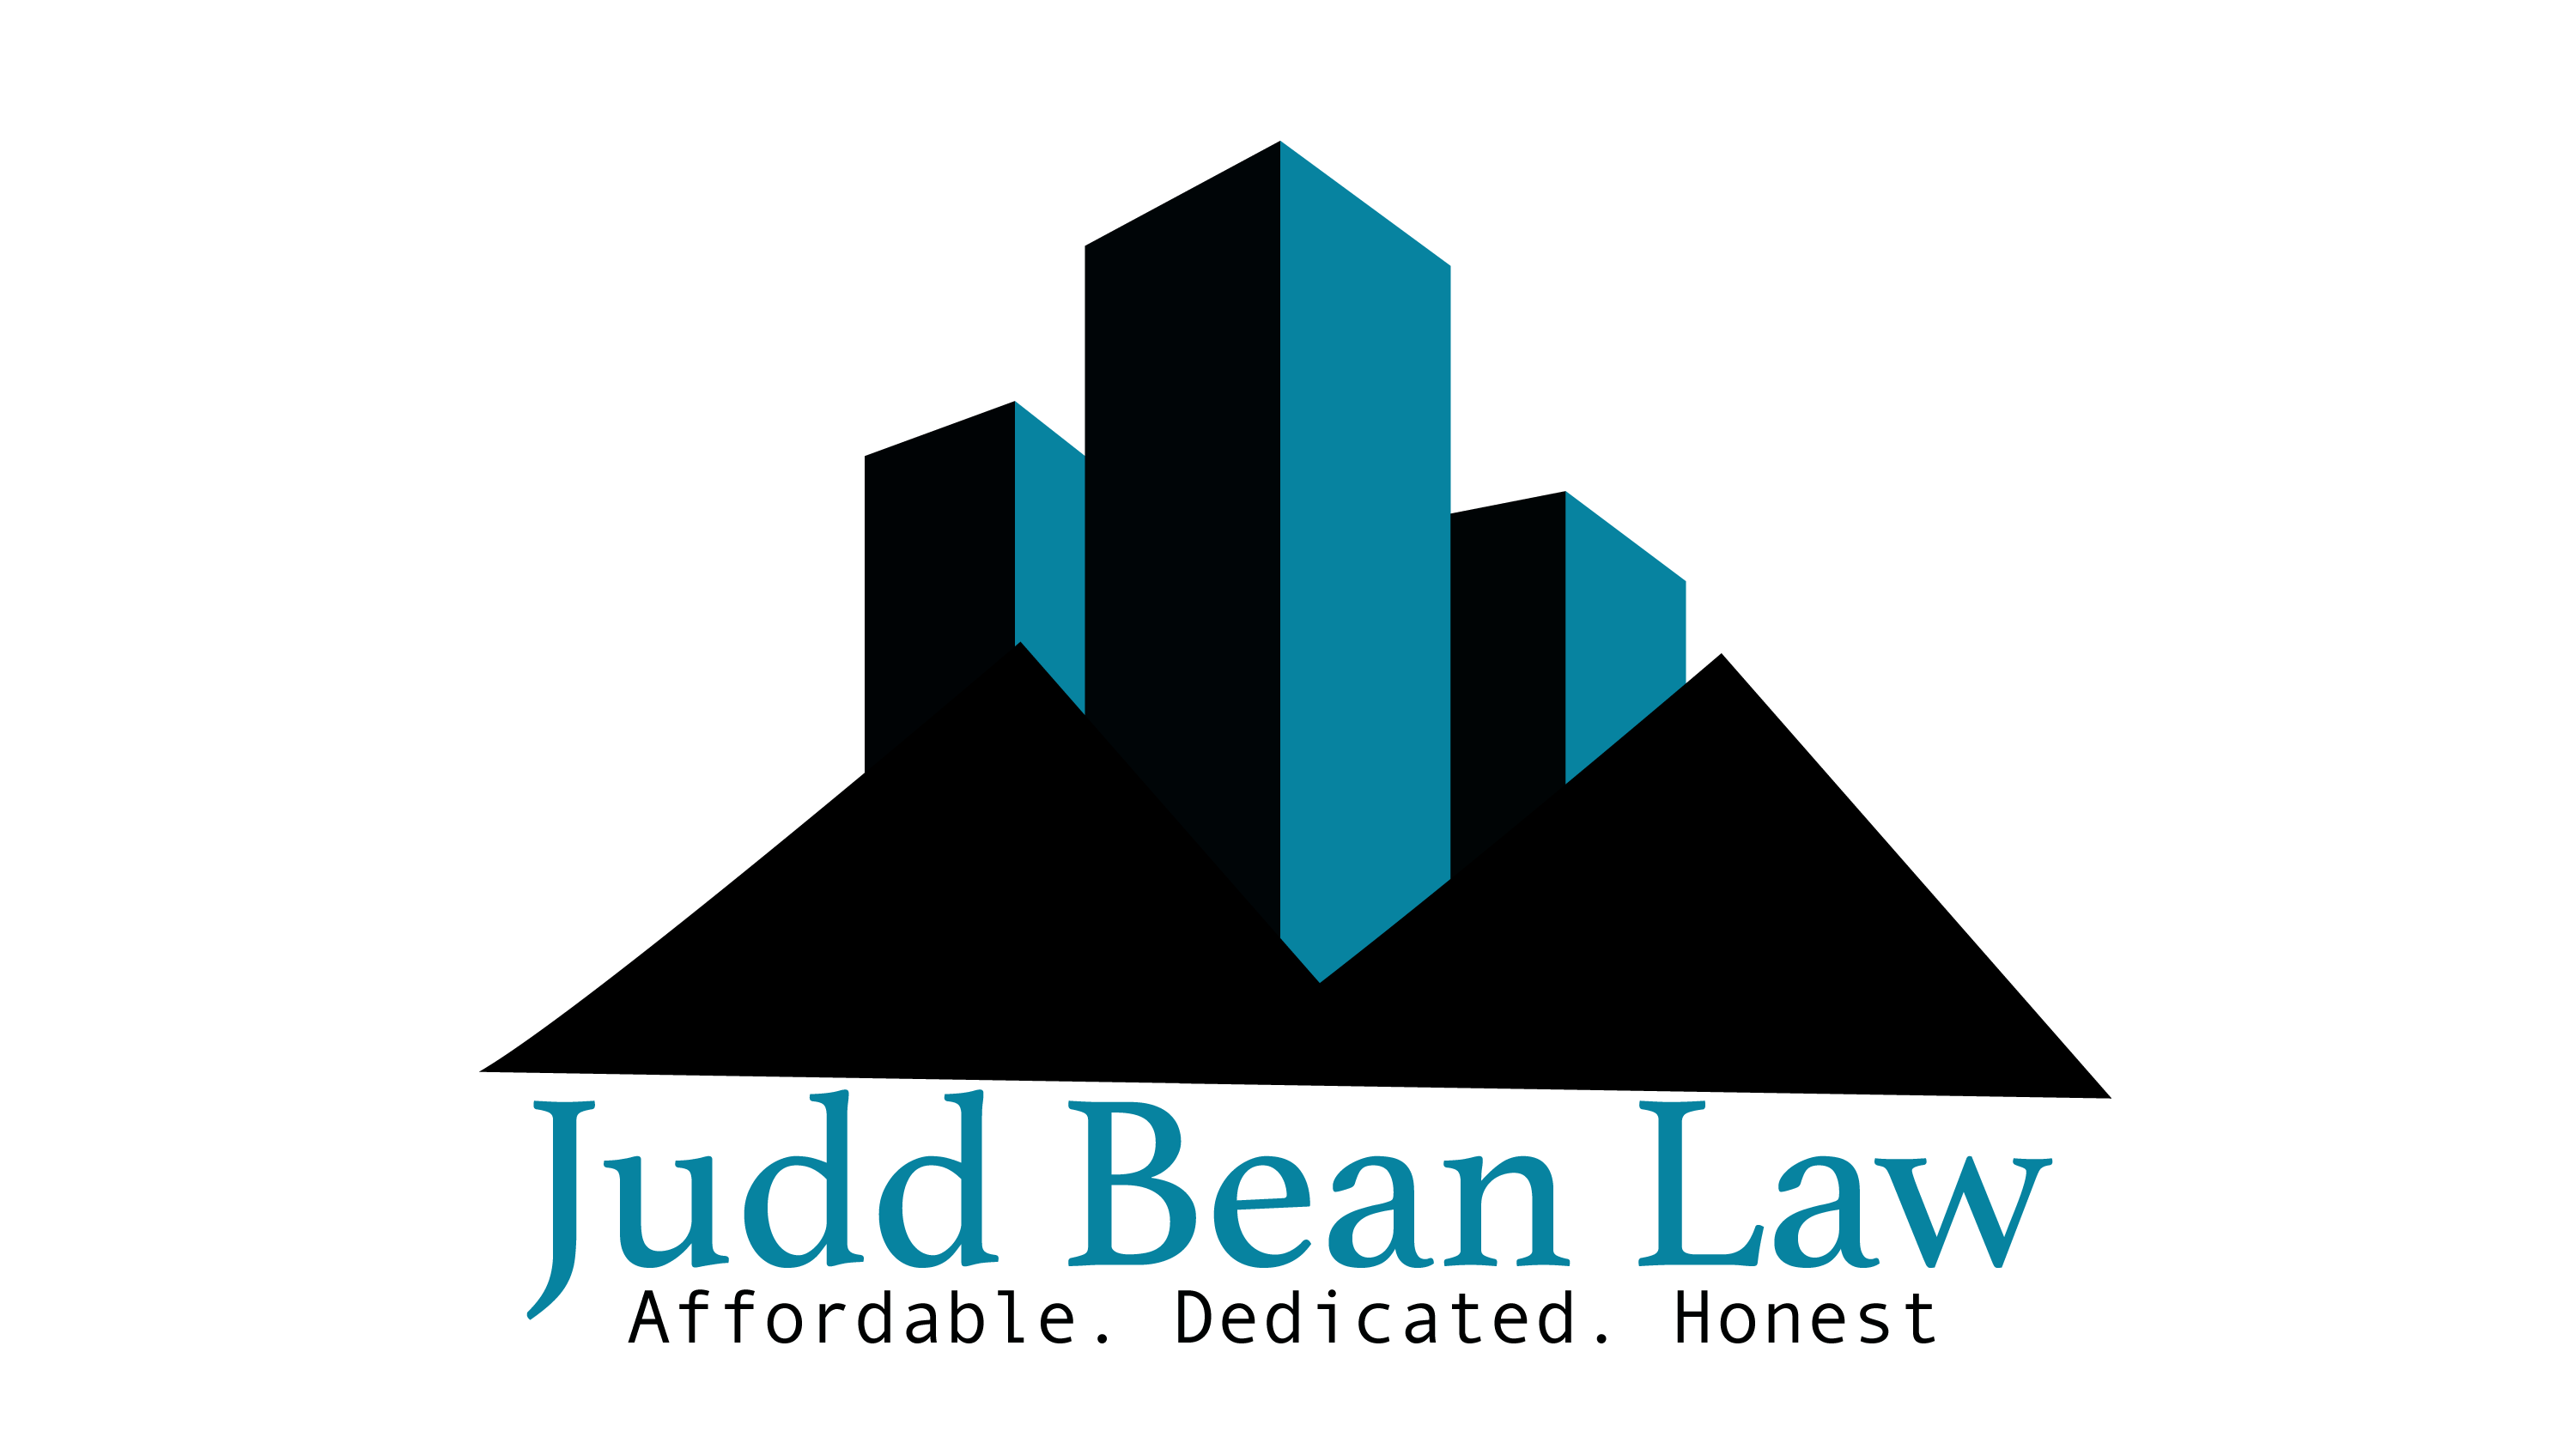 Judd Bean Law